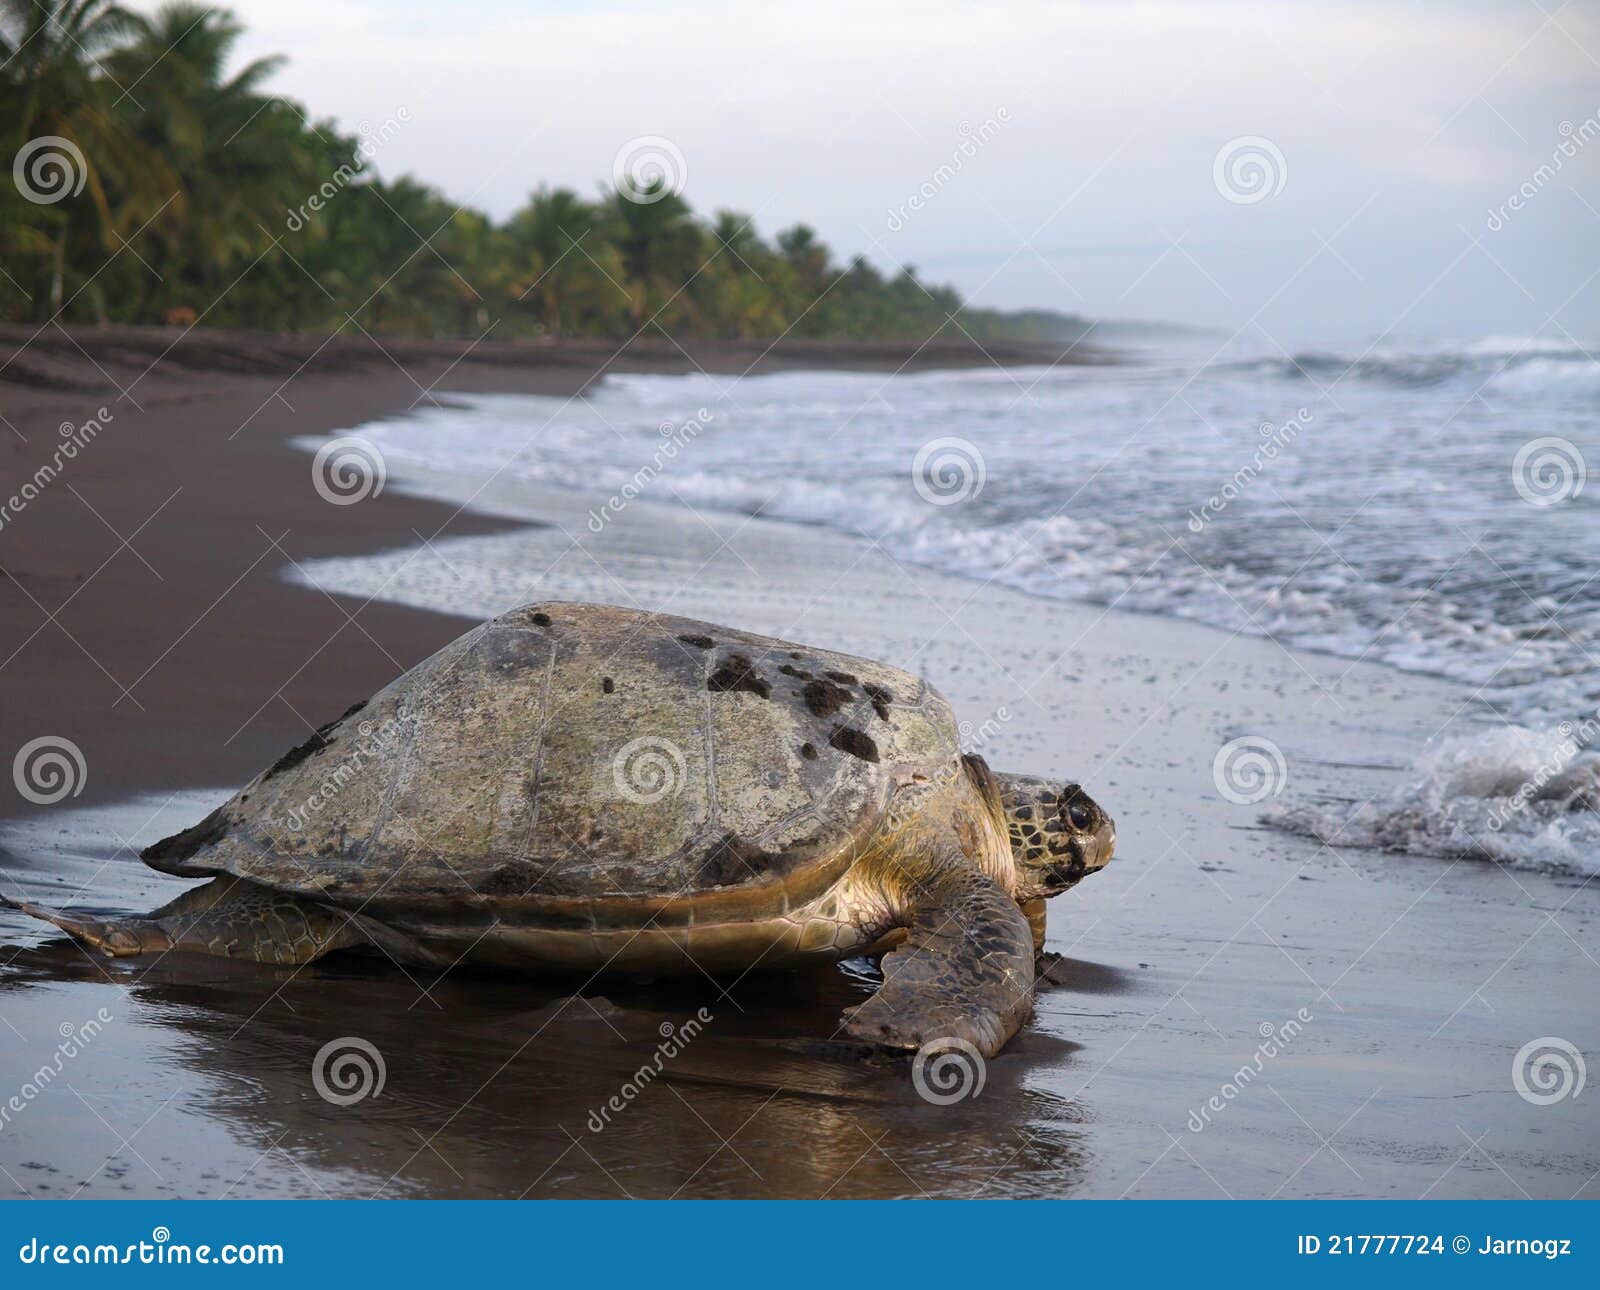 sea turtle in tortuguero national park, costa rica